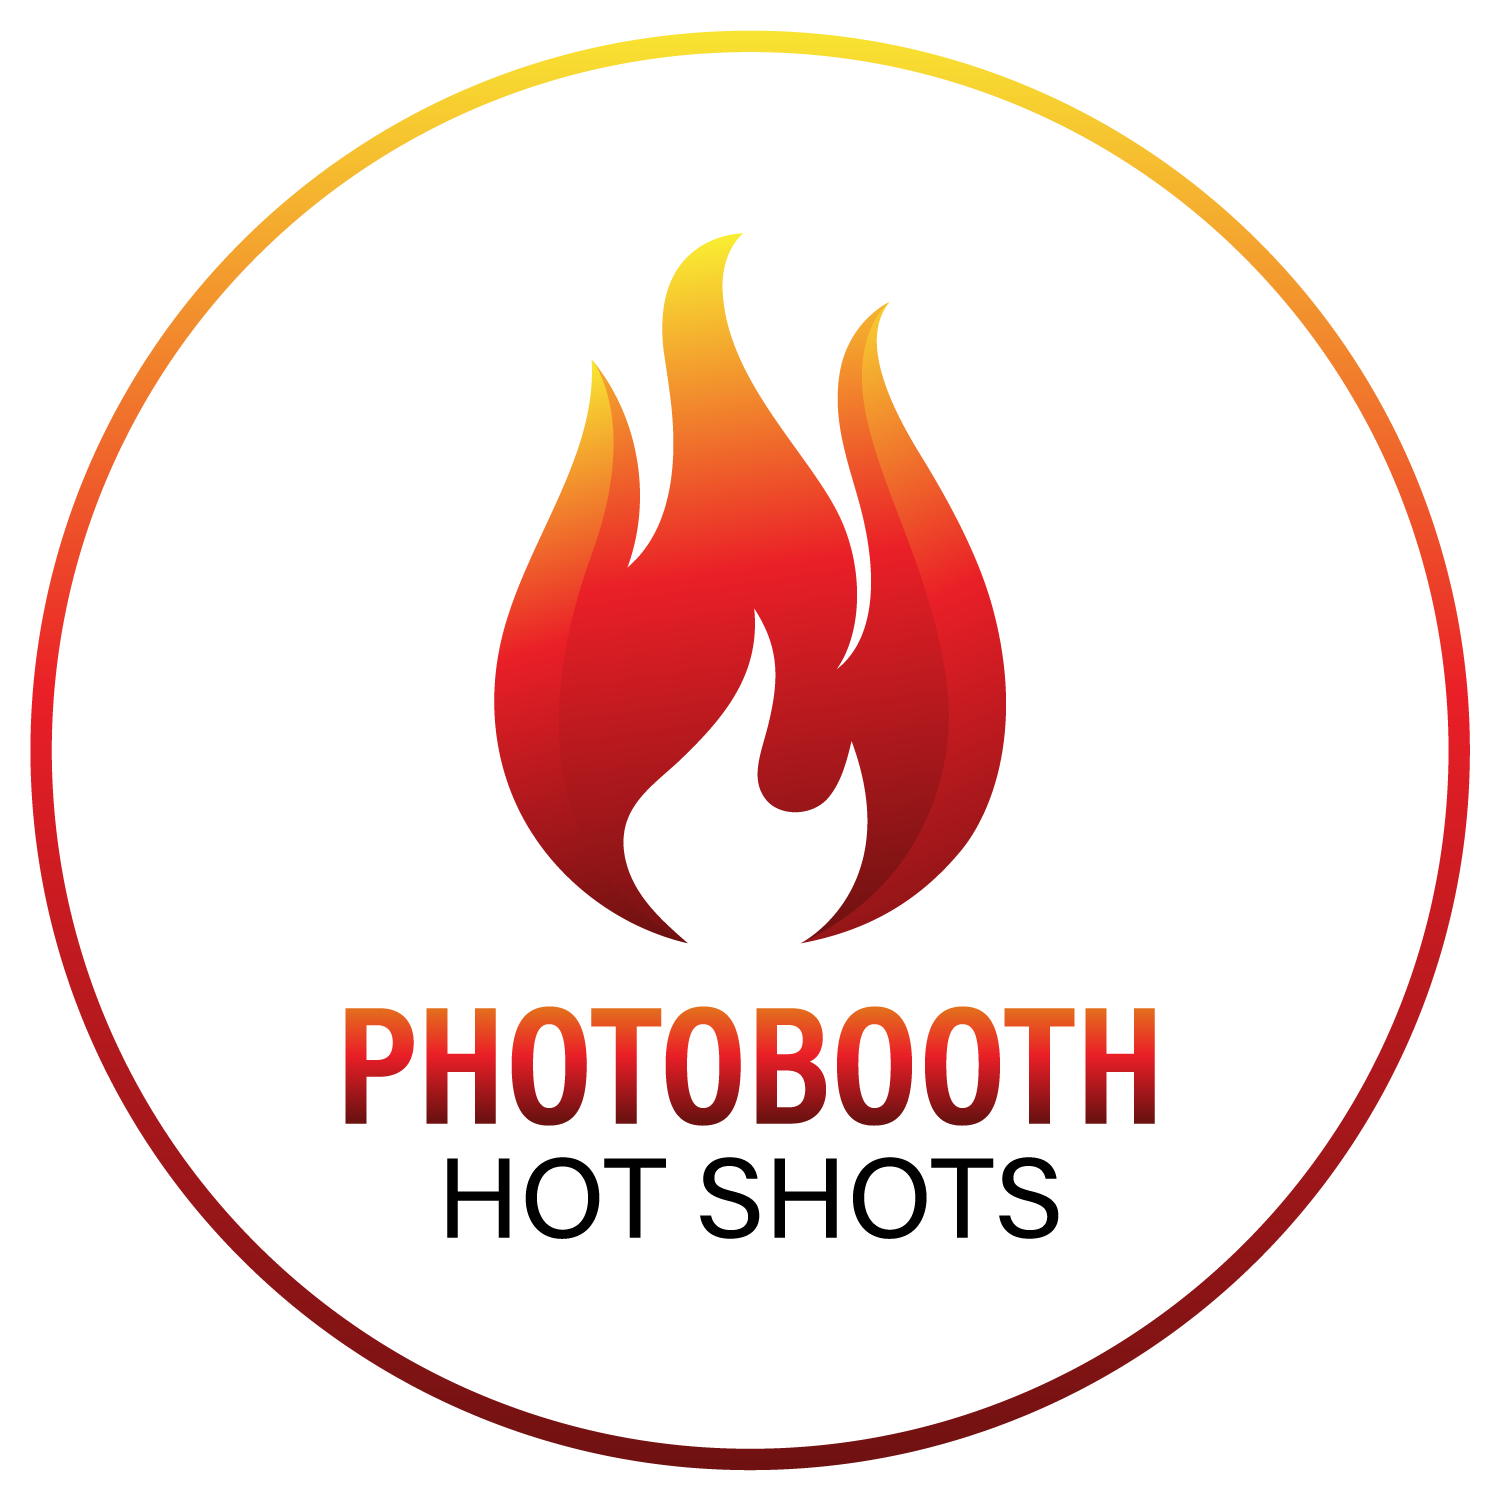 Photobooth Hotshots LLC